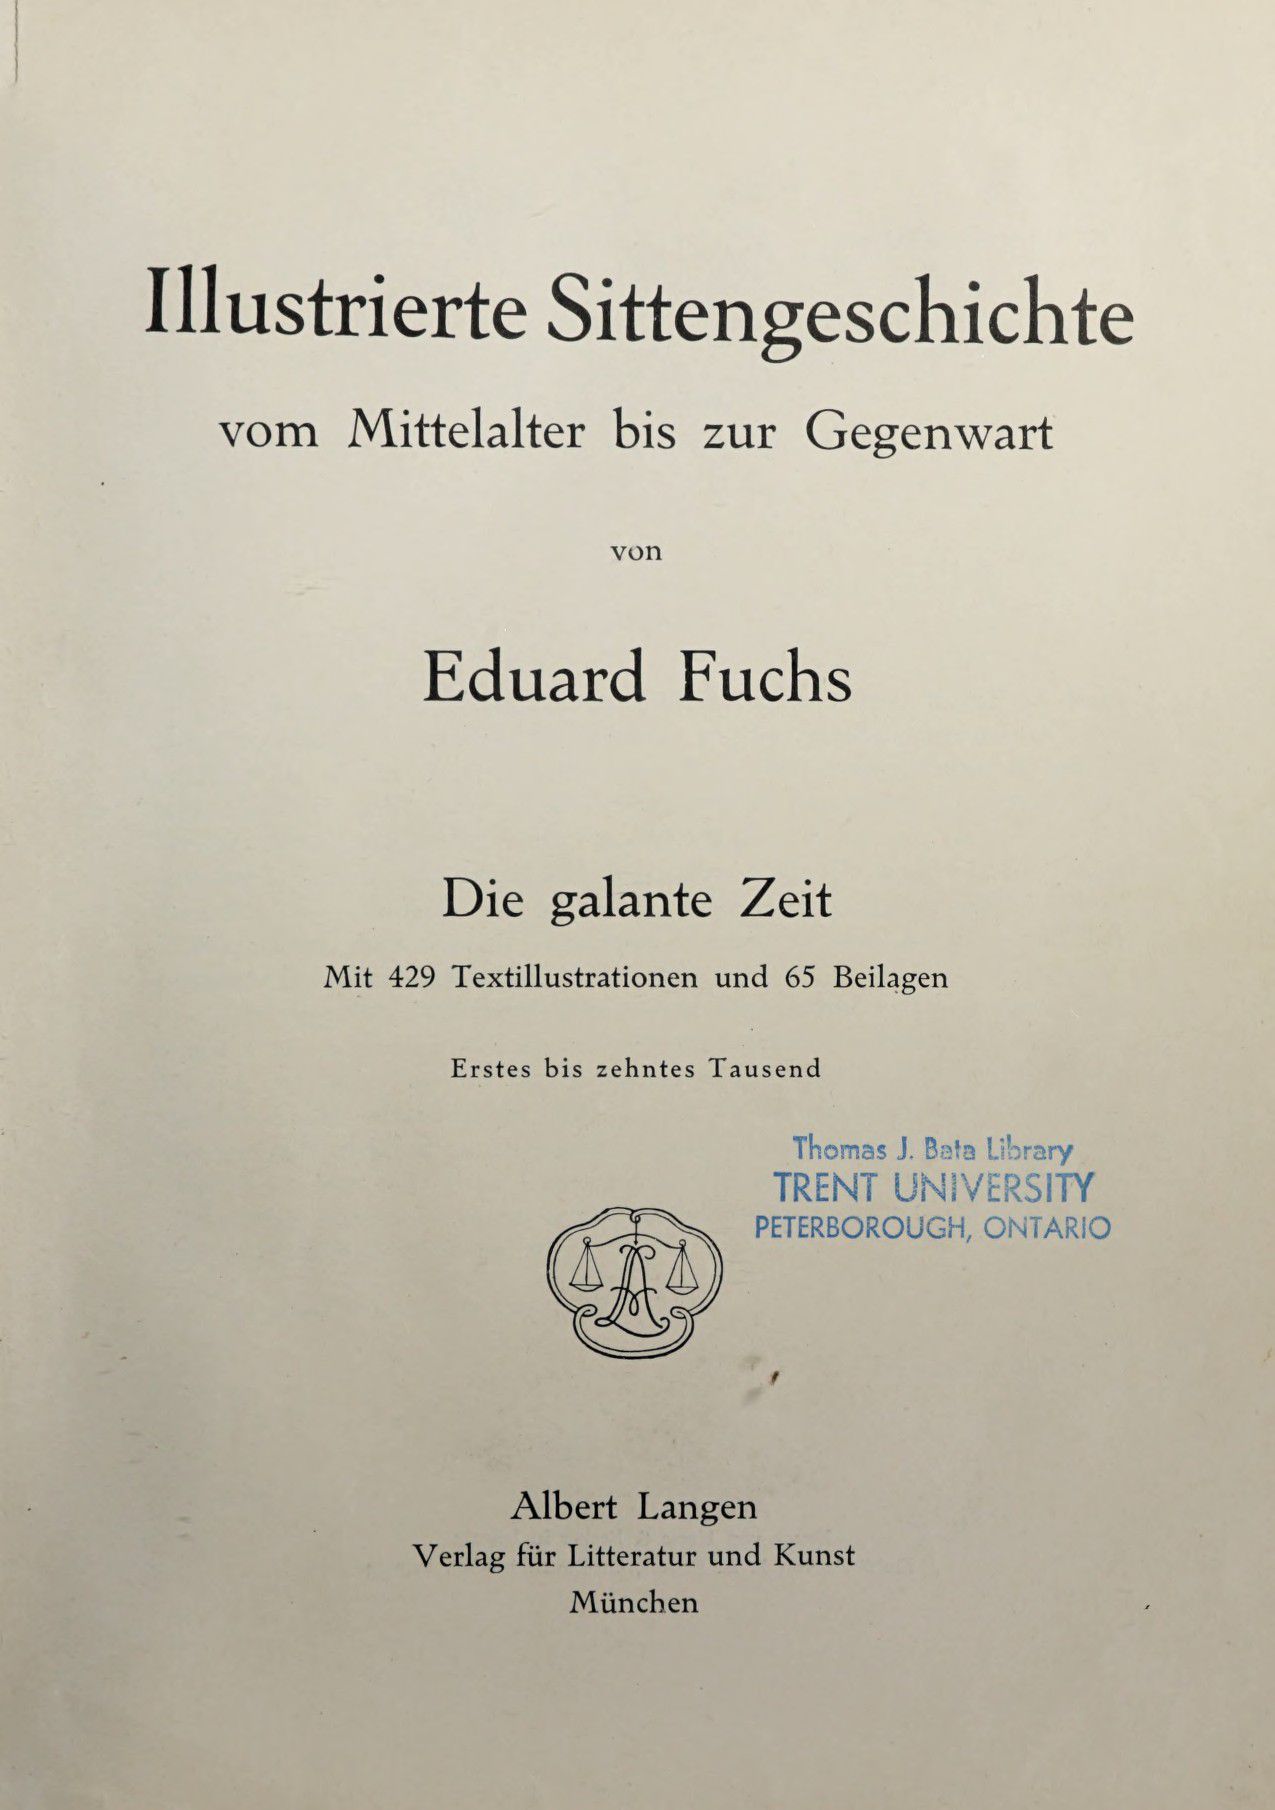 [Eduard Fuchs] Illustrierte Sittengeschichte vom Mittelalter bis zur Gegenwart: Bd. 2. and Ergänzungsband. Die galante Zeit [German] 14